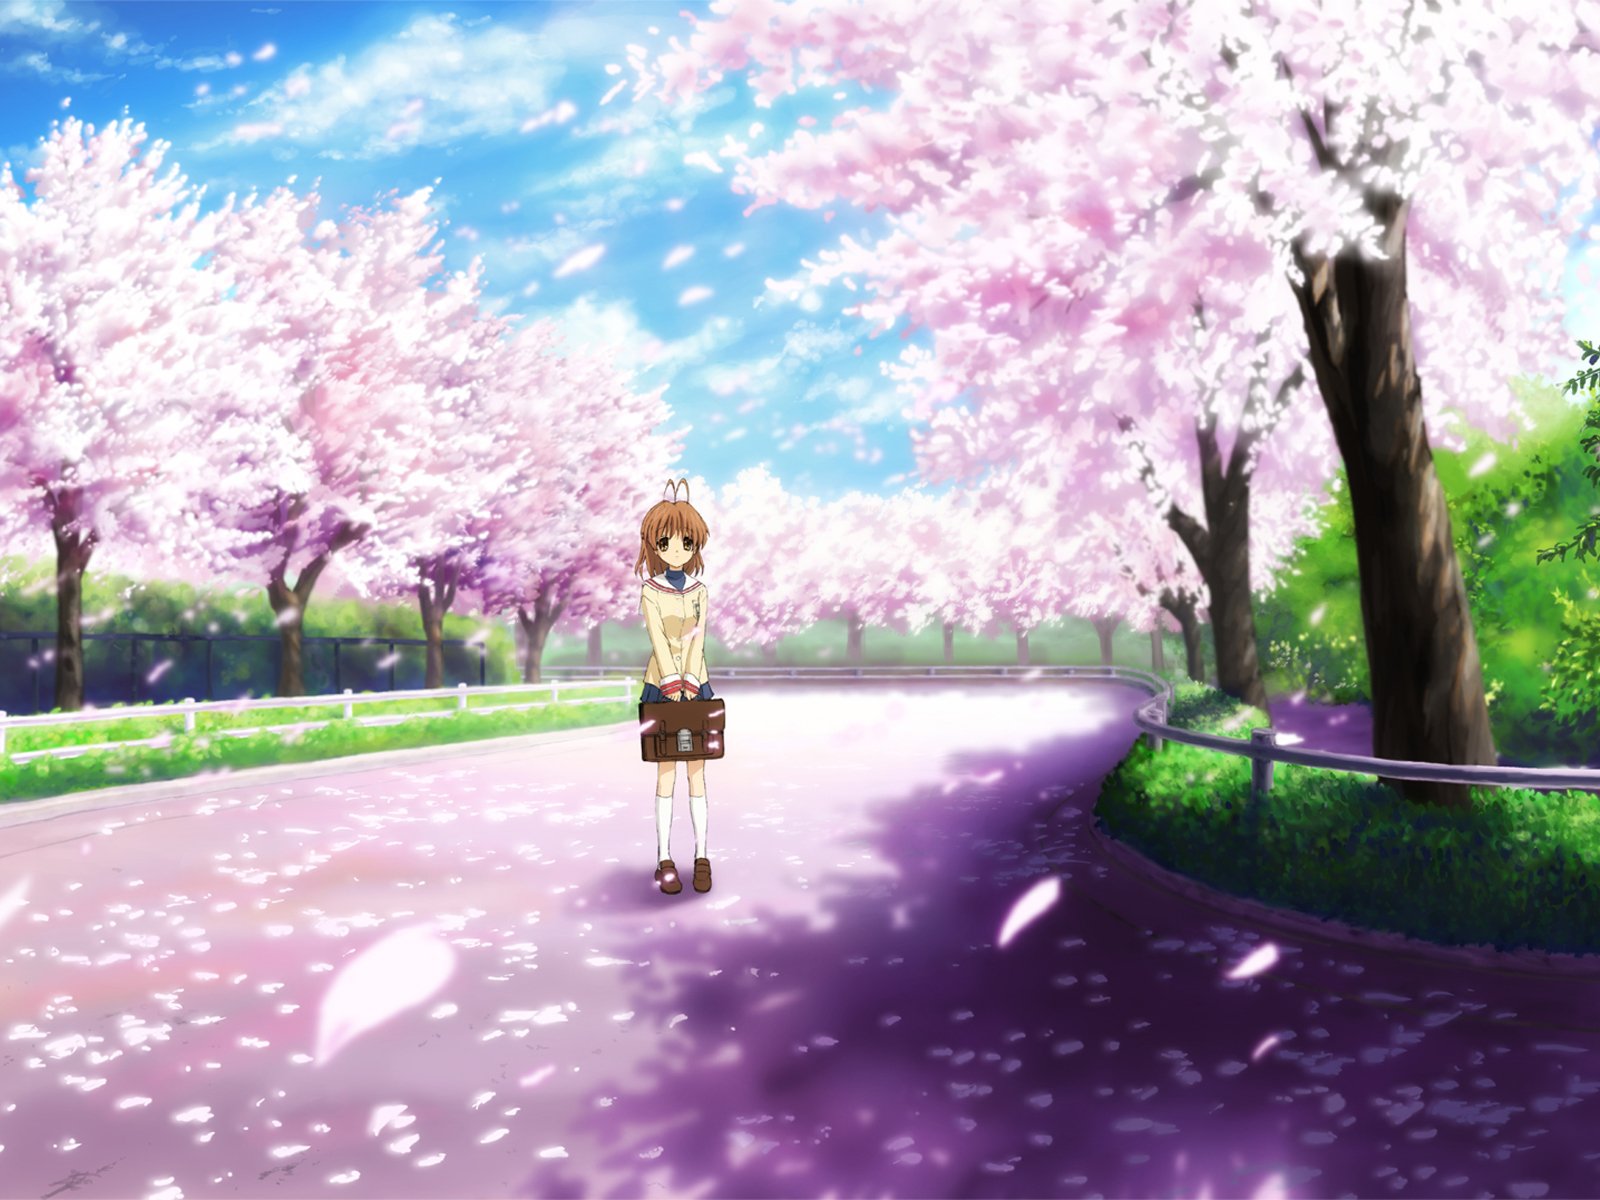 Anime Clannad, wallpaper - Tải về những hình nền đẹp lung linh với các nhân vật yêu thích trong bộ anime Clannad, mang đến cho bạn cảm giác nhẹ nhàng, tình cảm đầy cuốn hút.